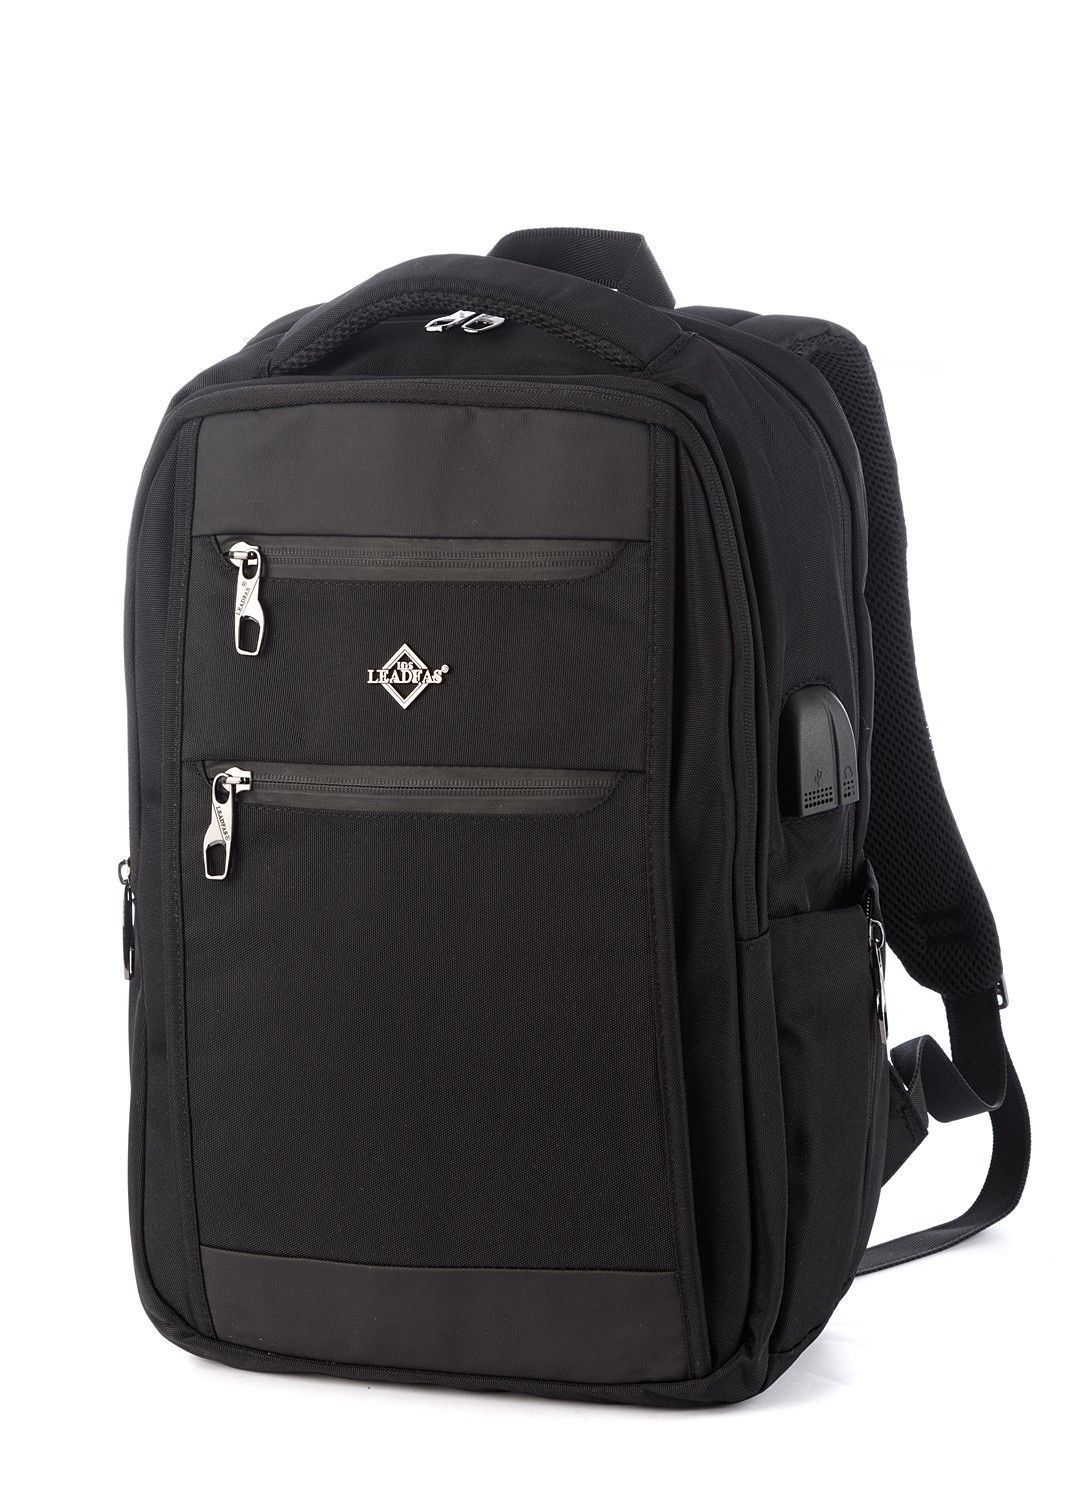 Рюкзак мужской городской, черный, для ноутбука, с USB портом, объем 17л